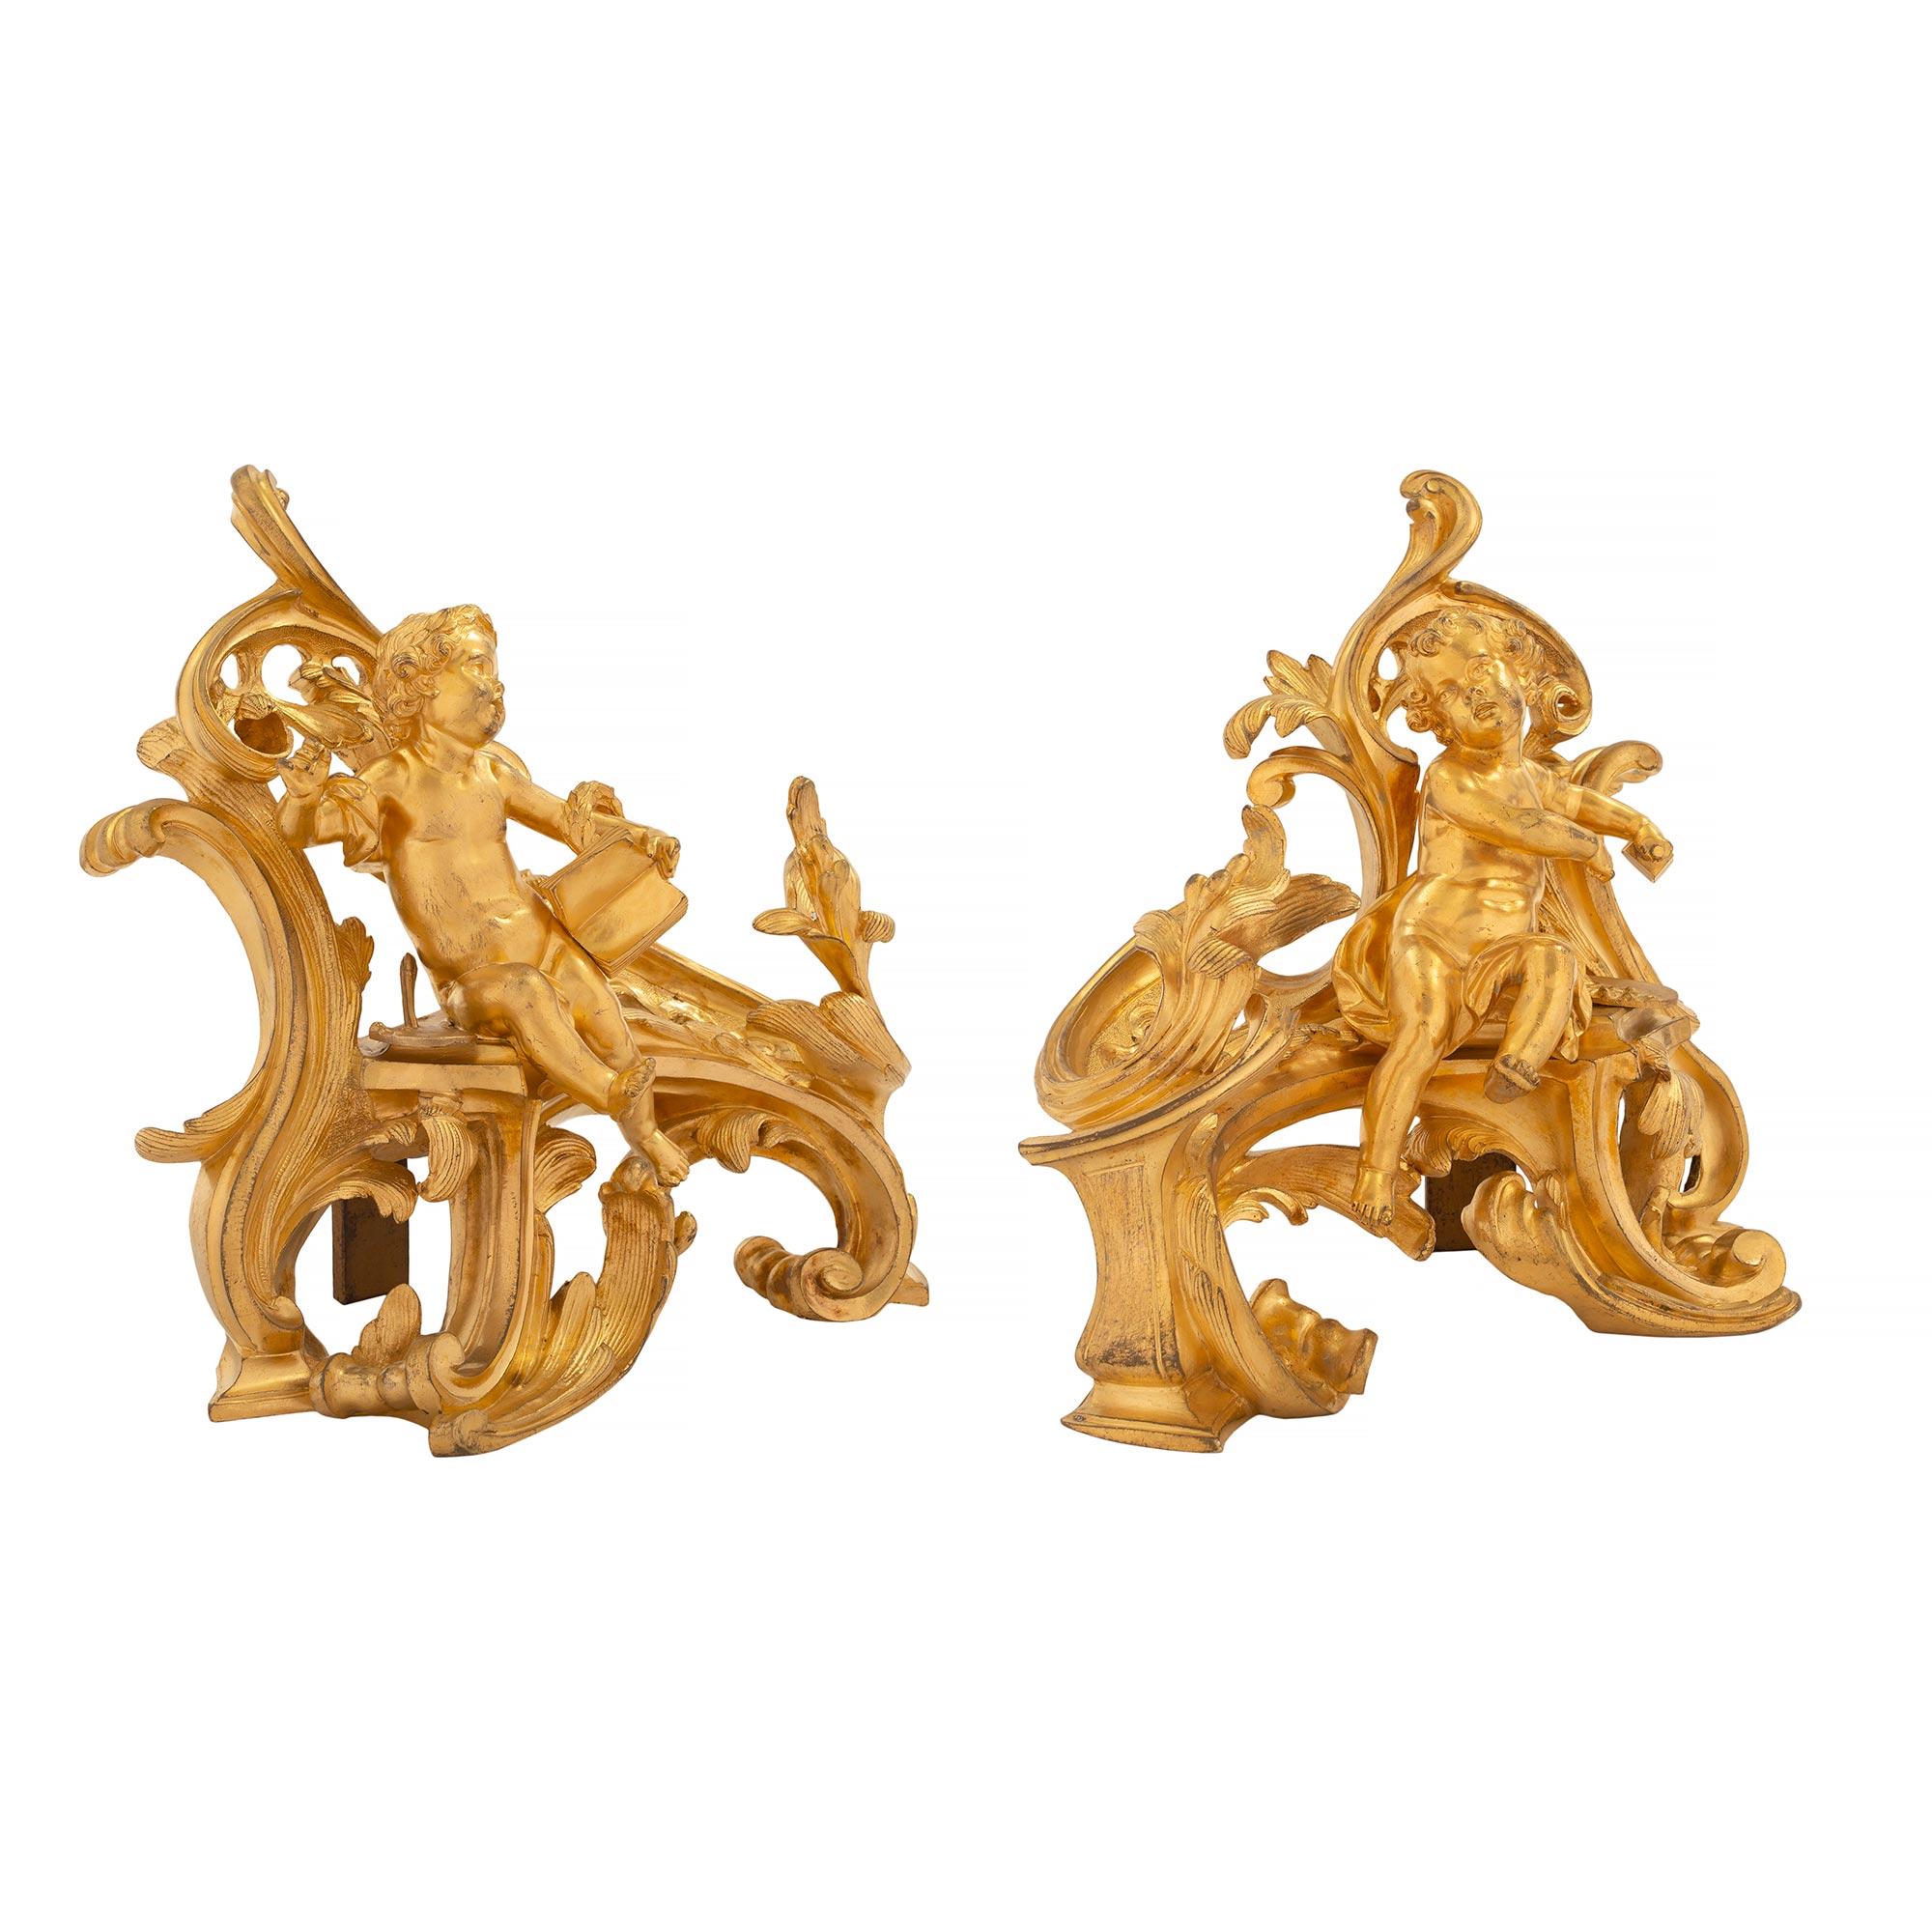 Paire de chenets en bronze doré de haute qualité, de style Louis XV, datant du début du XIXe siècle. Chaque chenet est surélevé par de magnifiques et très décoratifs mouvements de volutes aux captivants motifs feuillagés. De charmants chérubins sont